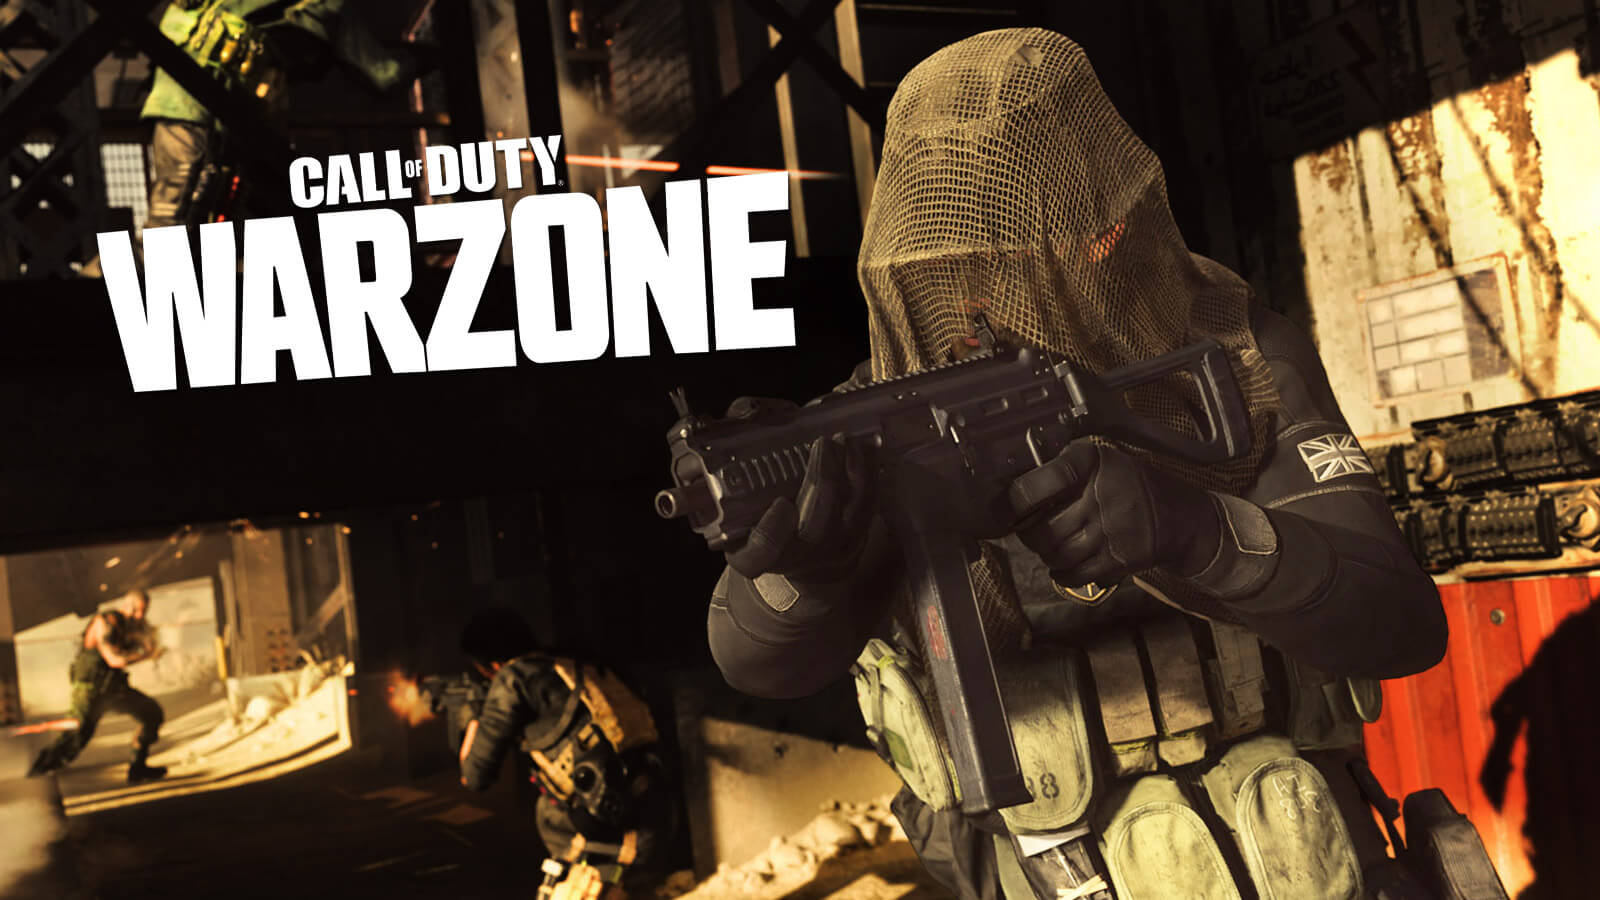 Call of duty warzone play. Call of Duty Warzone. Call of Duty Warzone 2. Call of Duty Warzone 2 стрим. Варзоне Call of Duty.